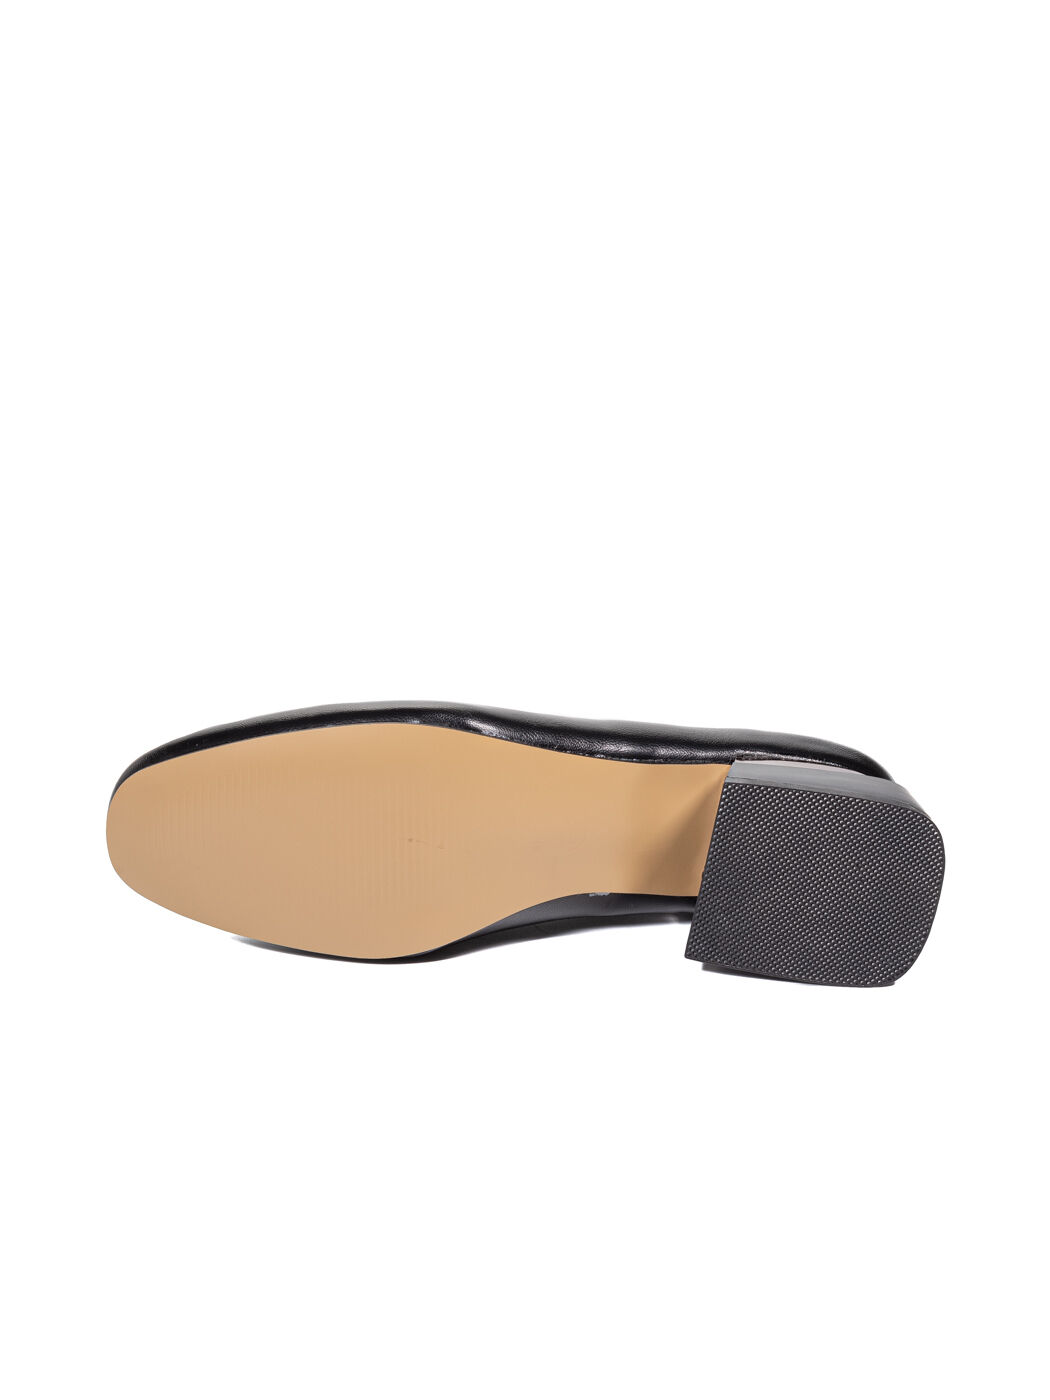 Туфли женские черные экокожа каблук устойчивый демисезон от производителя 2M вид 2